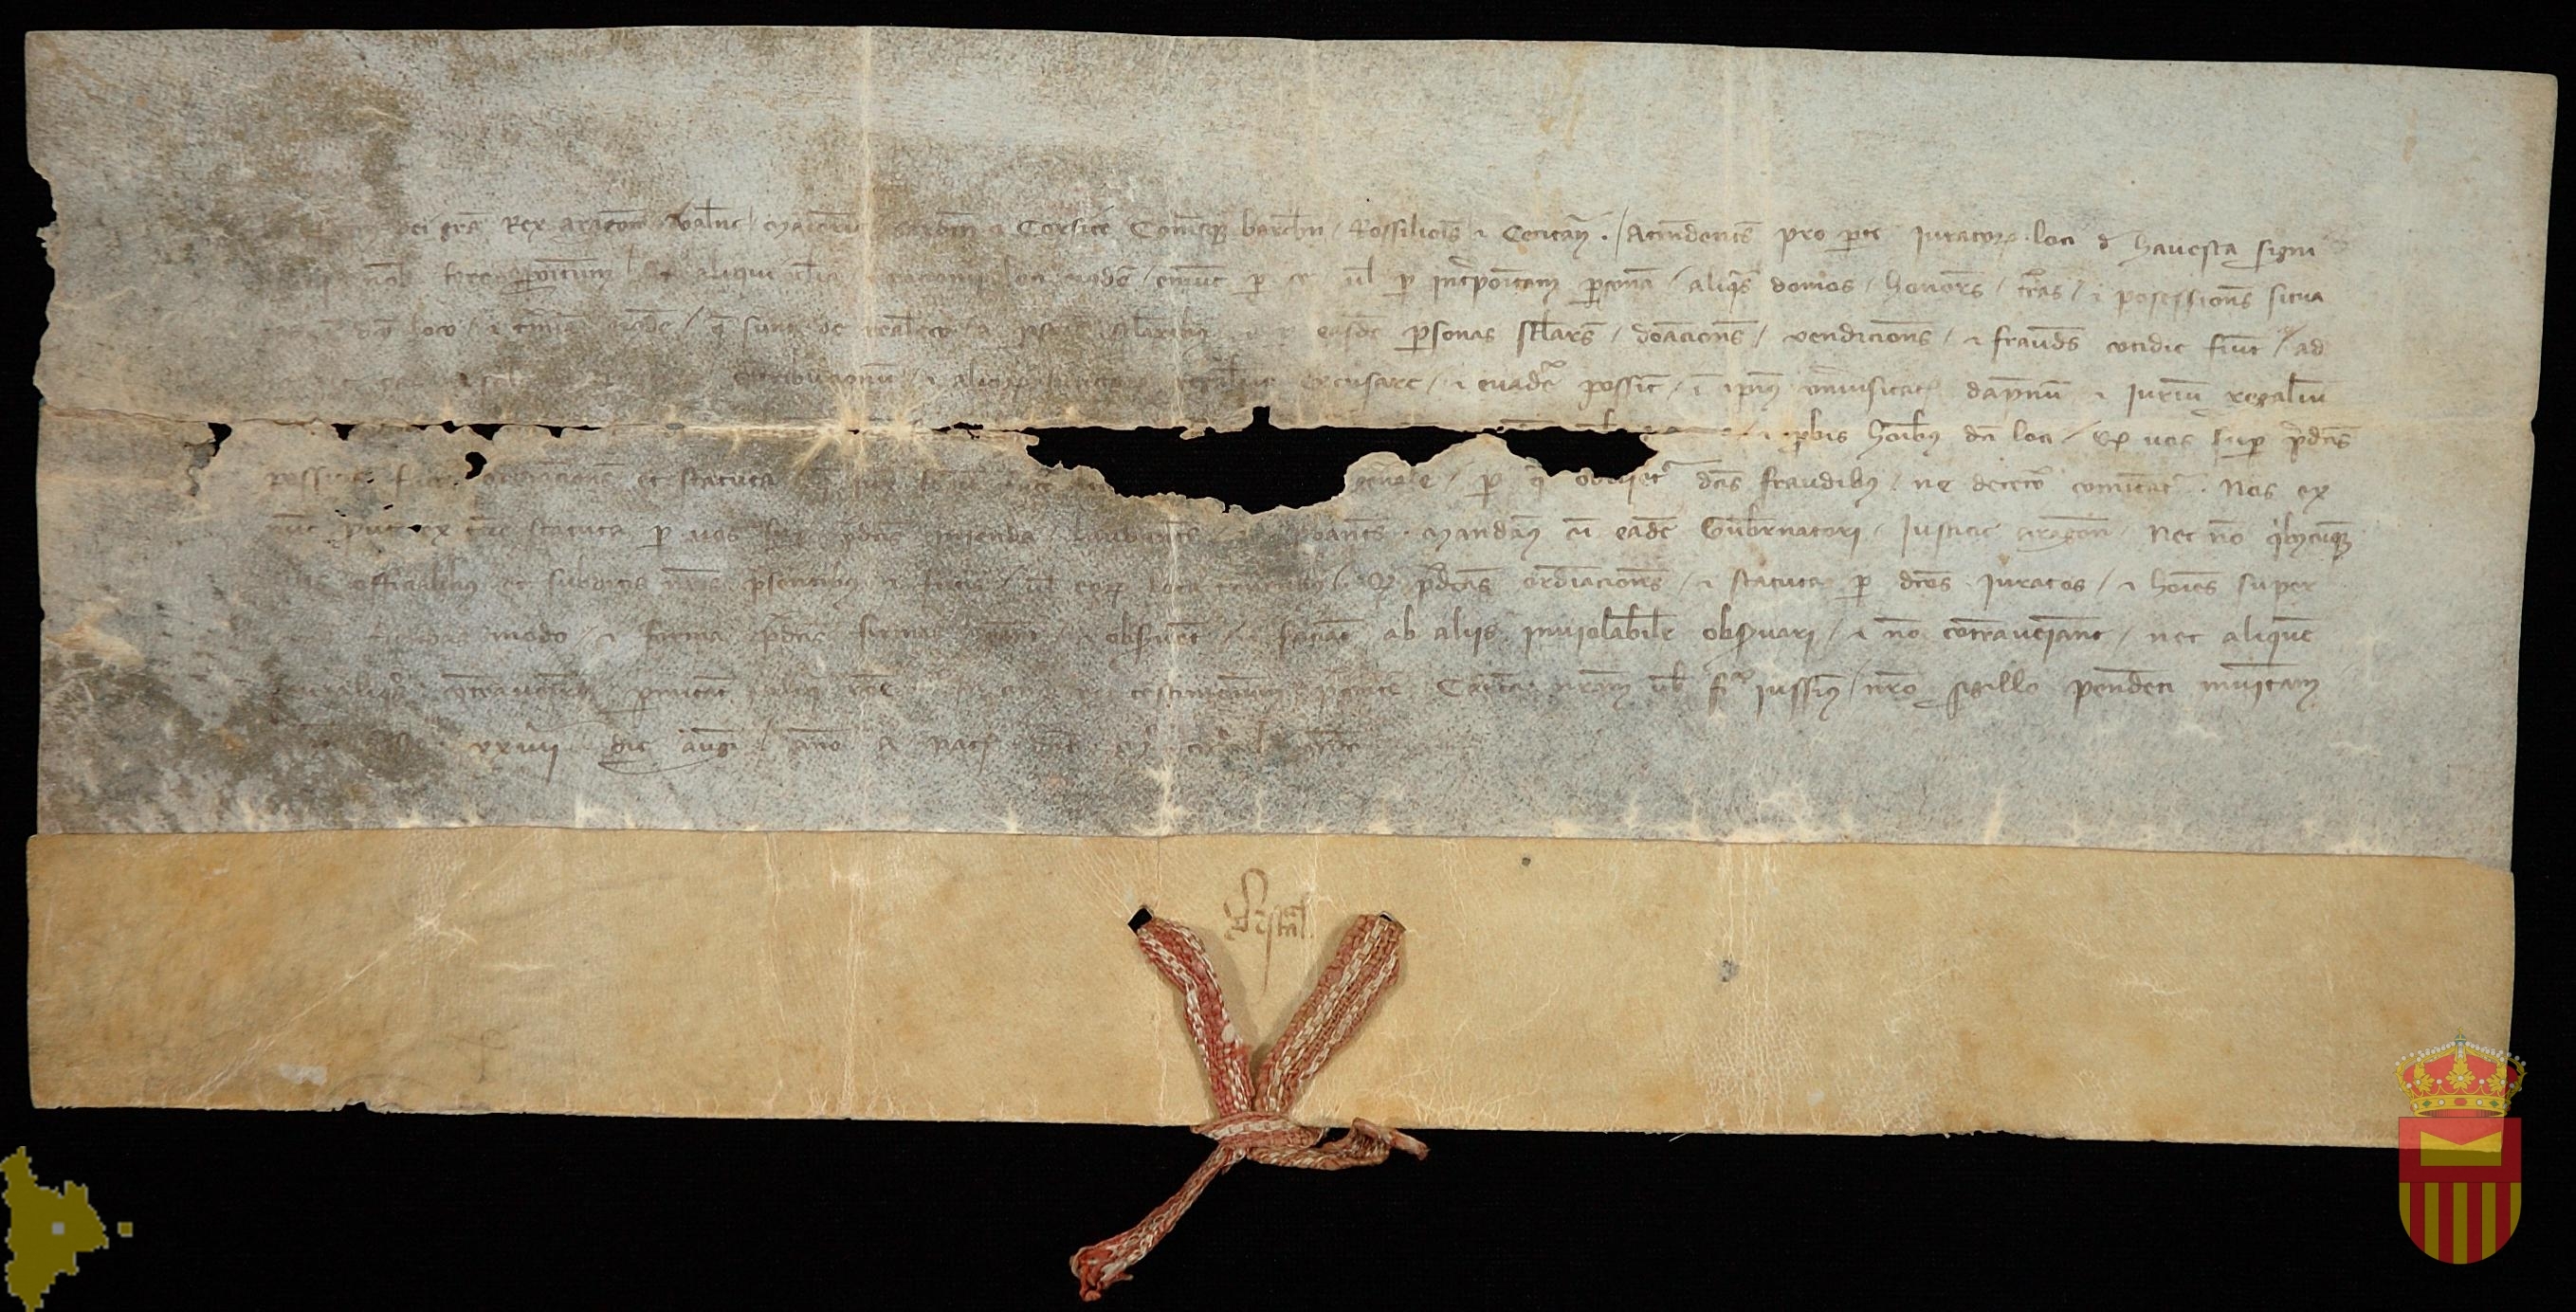 Pedro IV concede a los habitantes de Adahuesca una exención fiscal de acuerdo con los estatutos de tierras de realengo